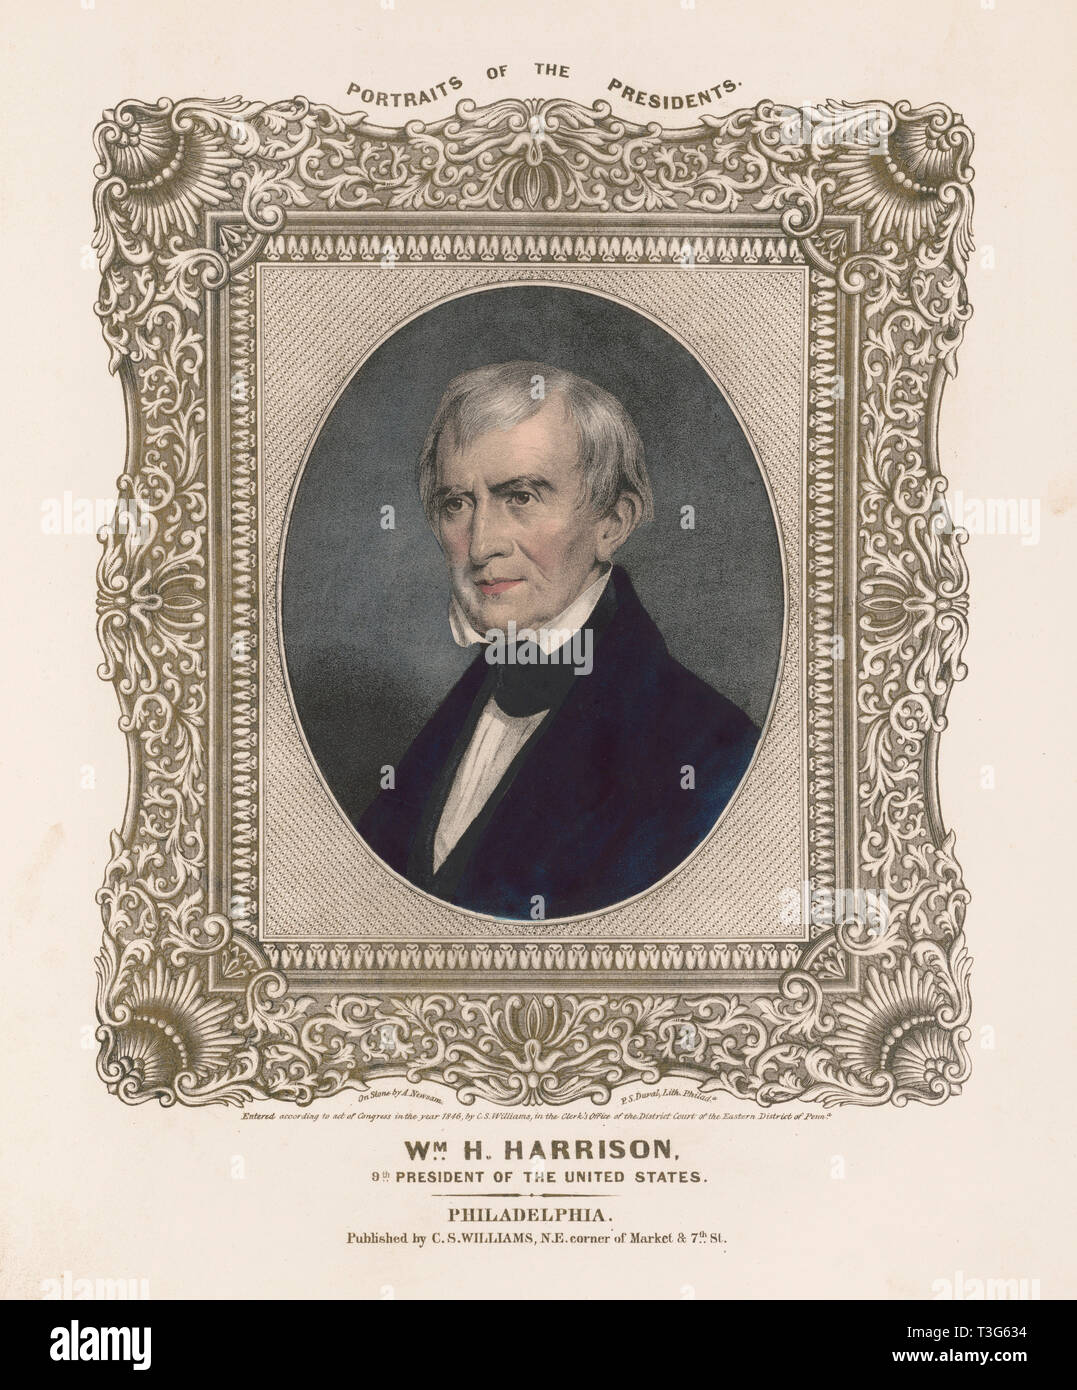 William Henry Harrison, 9. der Präsident der Vereinigten Staaten, Leben auf Stein von A. Newsam, Lithographie von A. Duval, Veröffentlicht von C.S. Williams, Philadelphia, 1846 Stockfoto